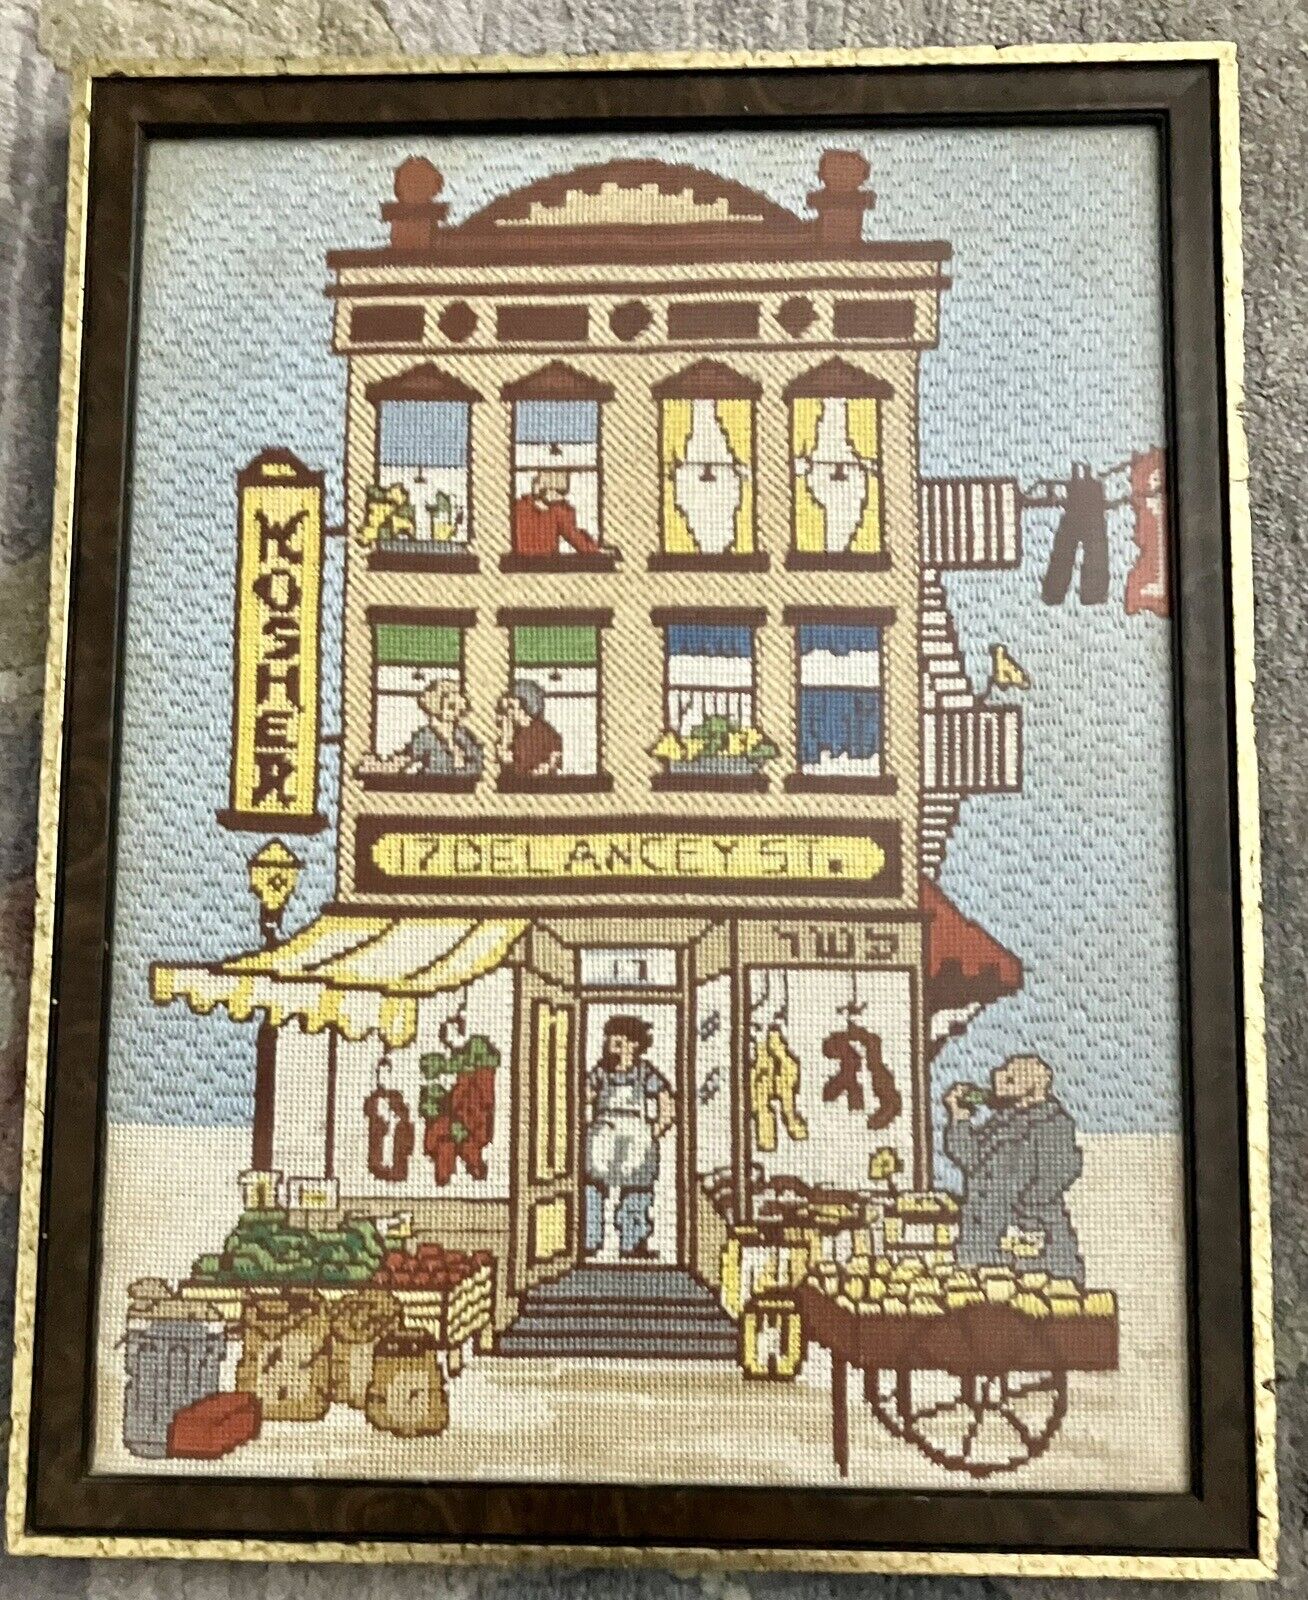 Judaica Needlepoint Old New York City Kosher Delaney St. Shop 20.5”x 16.5” Great